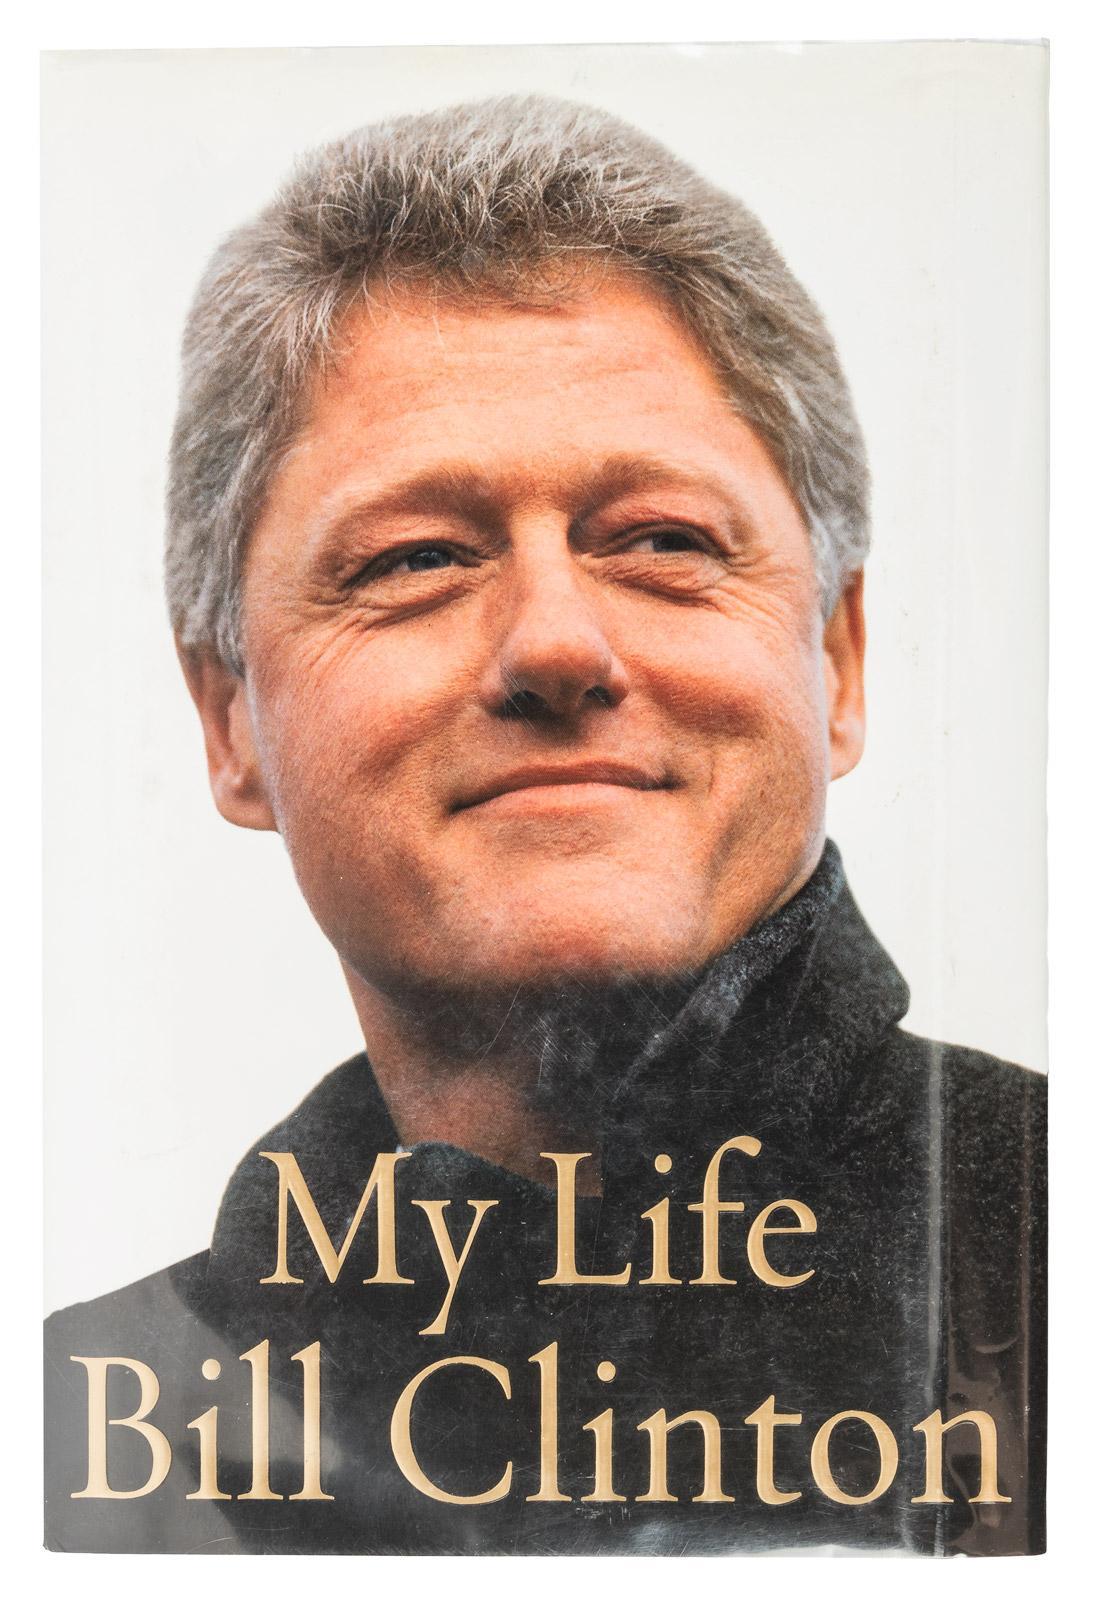 Clinton, Bill. Mein Leben.  New York: Alfred A. Knopf, 2004. Erste Ausgabe, erster Druck, 8ov. Unterzeichnet von Bill Clinton auf der Titelseite. In blauen Originalschubern und illustriertem Schutzumschlag.

Dies ist eine signierte Erstausgabe von